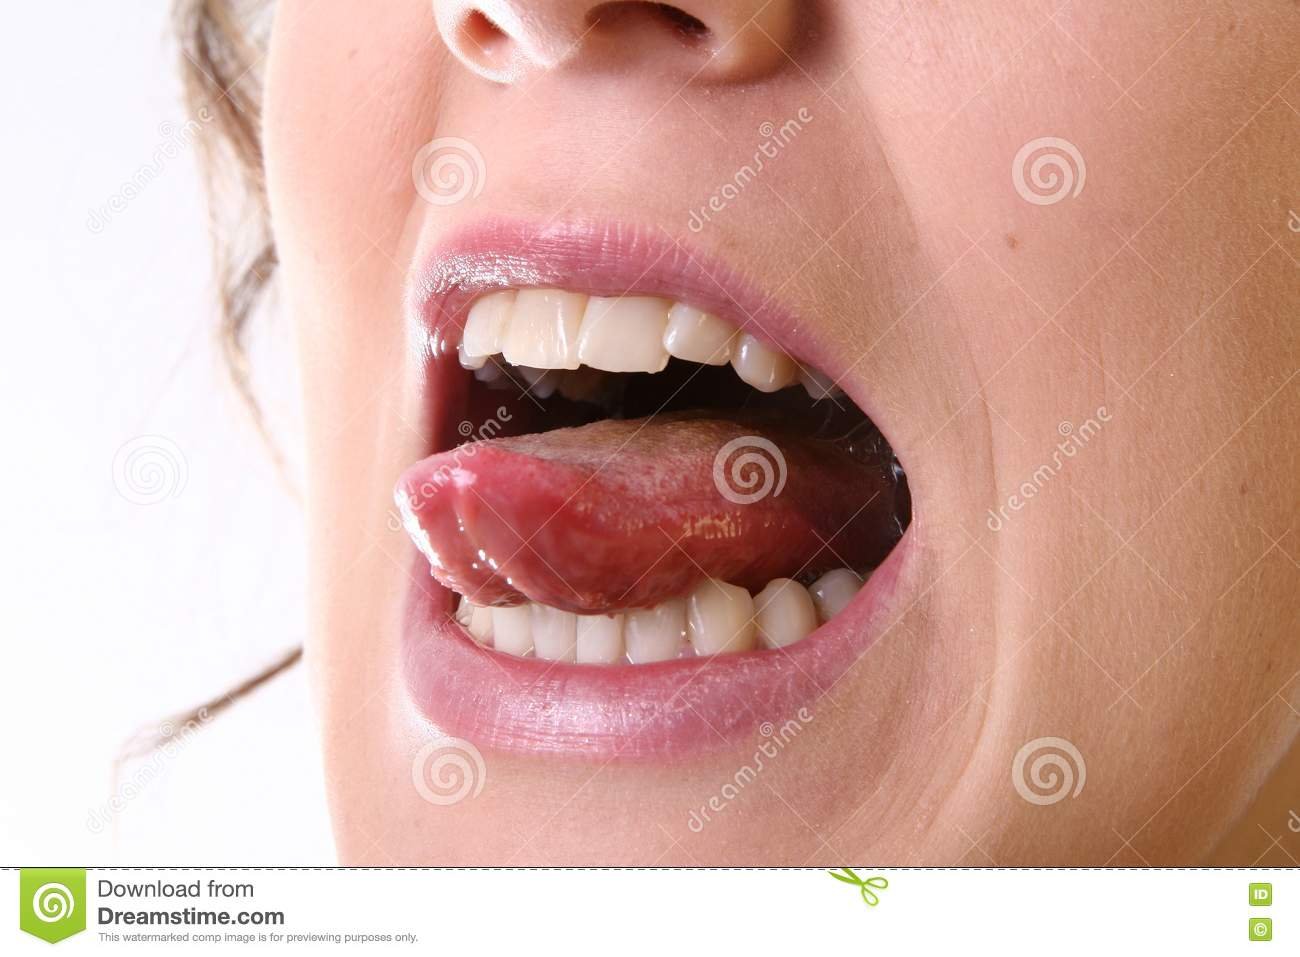 Под языком воспаление на кончике языка